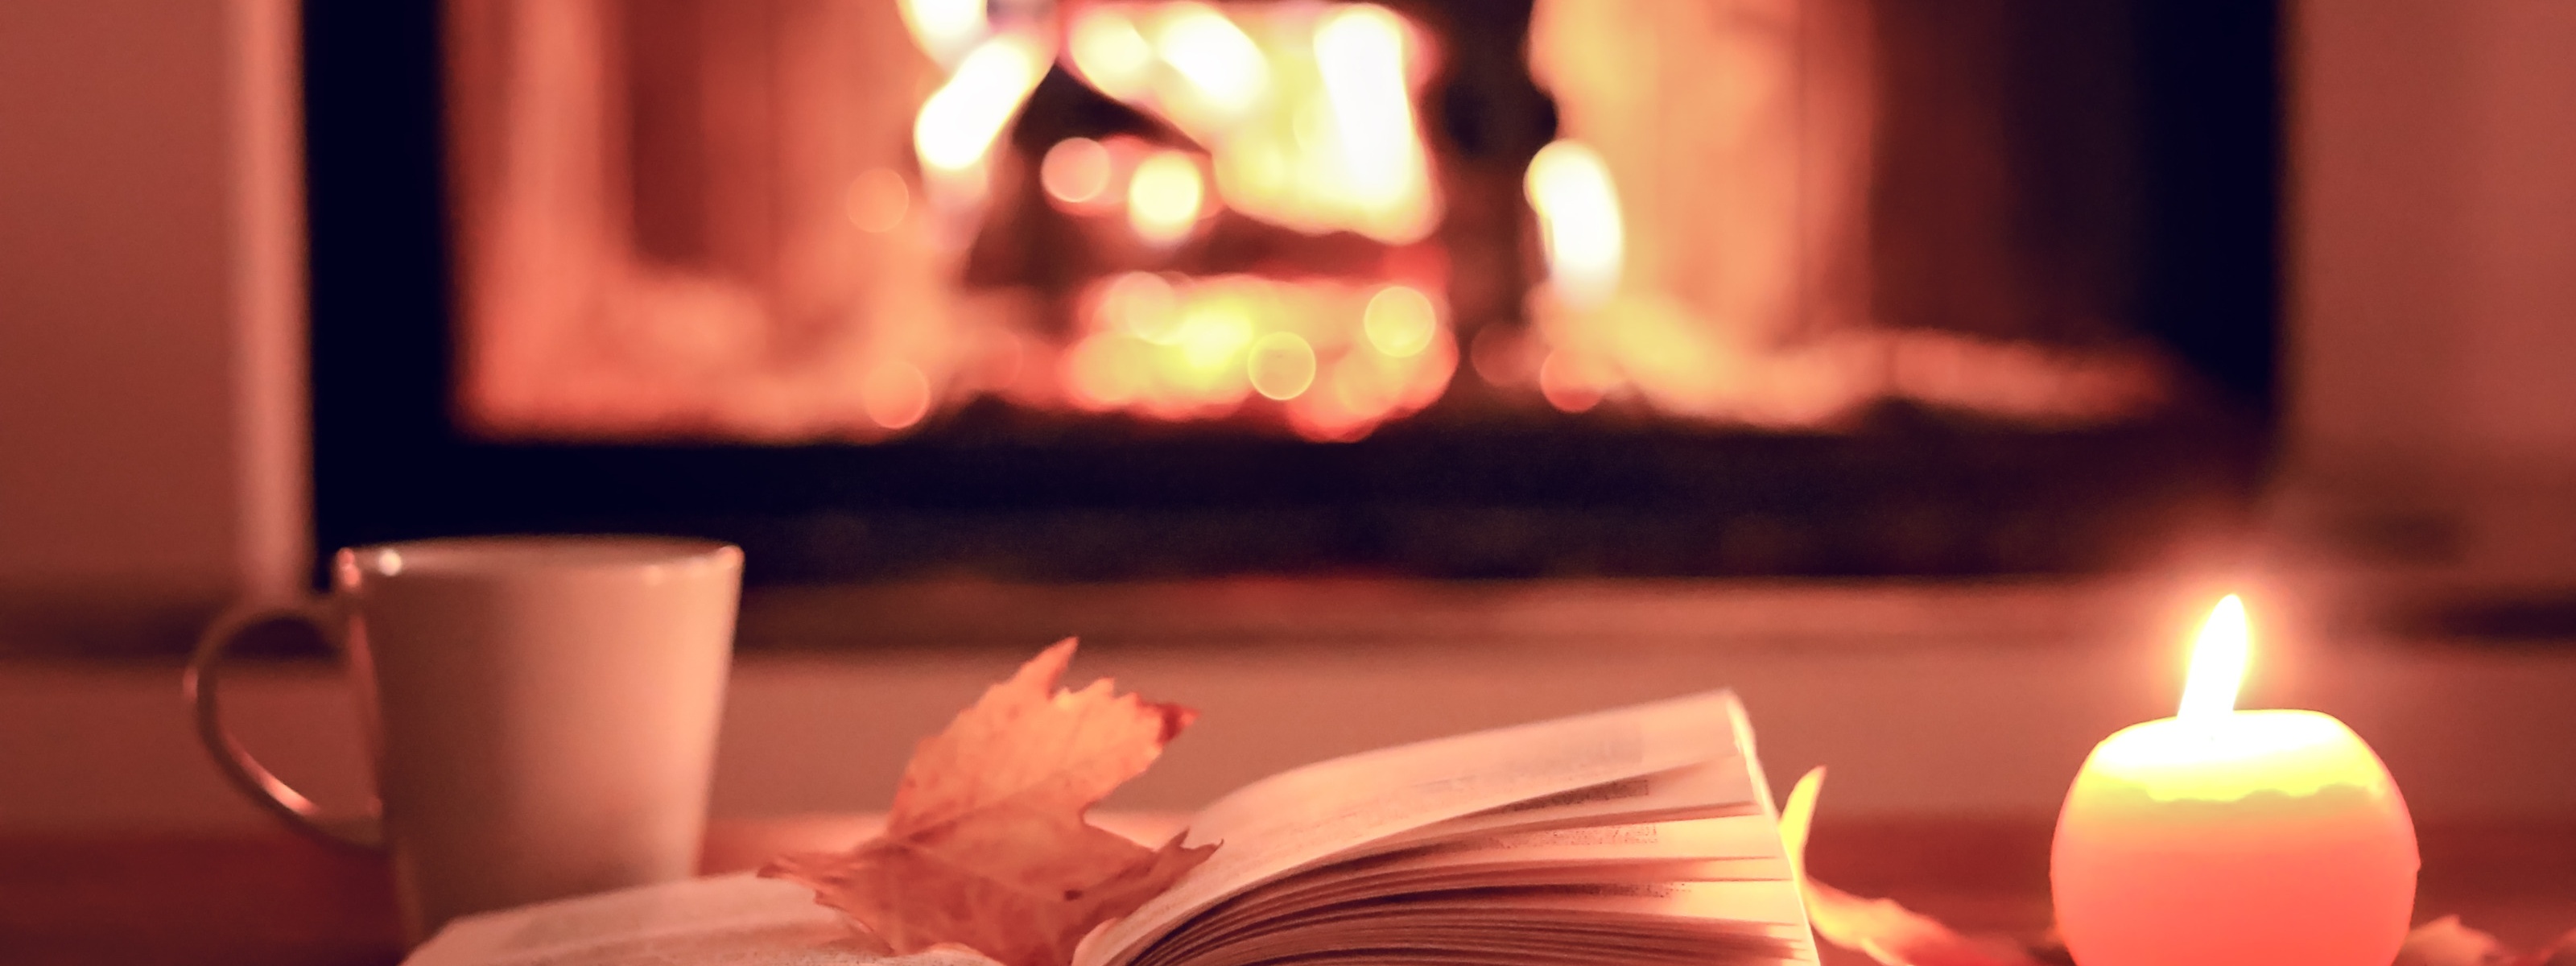 Aufgeklapptes Buch mit gelb gefärbtem herbstlichen Blatt darauf liegend, neben brennender runder Kerze und Tasse, im Hintergrund Kaminfeuer